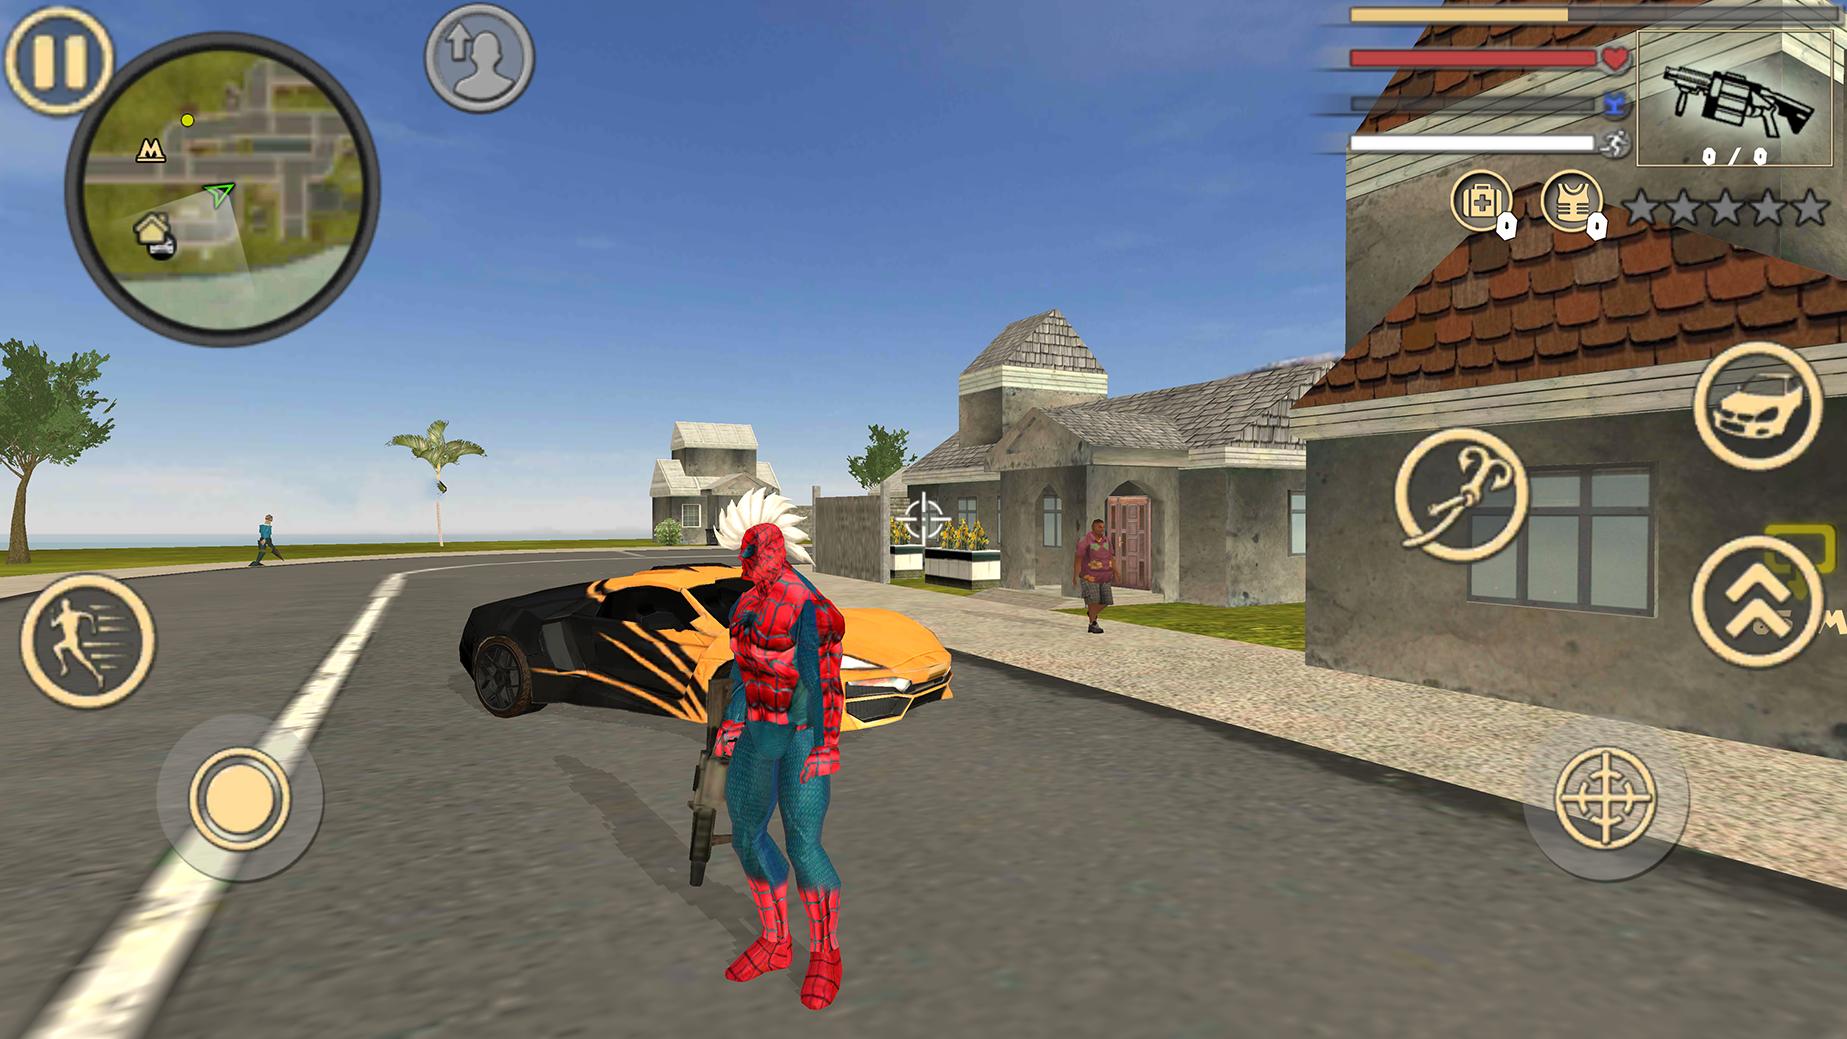 Spider Rope Hero Vice Town 1.2 Screenshot 1